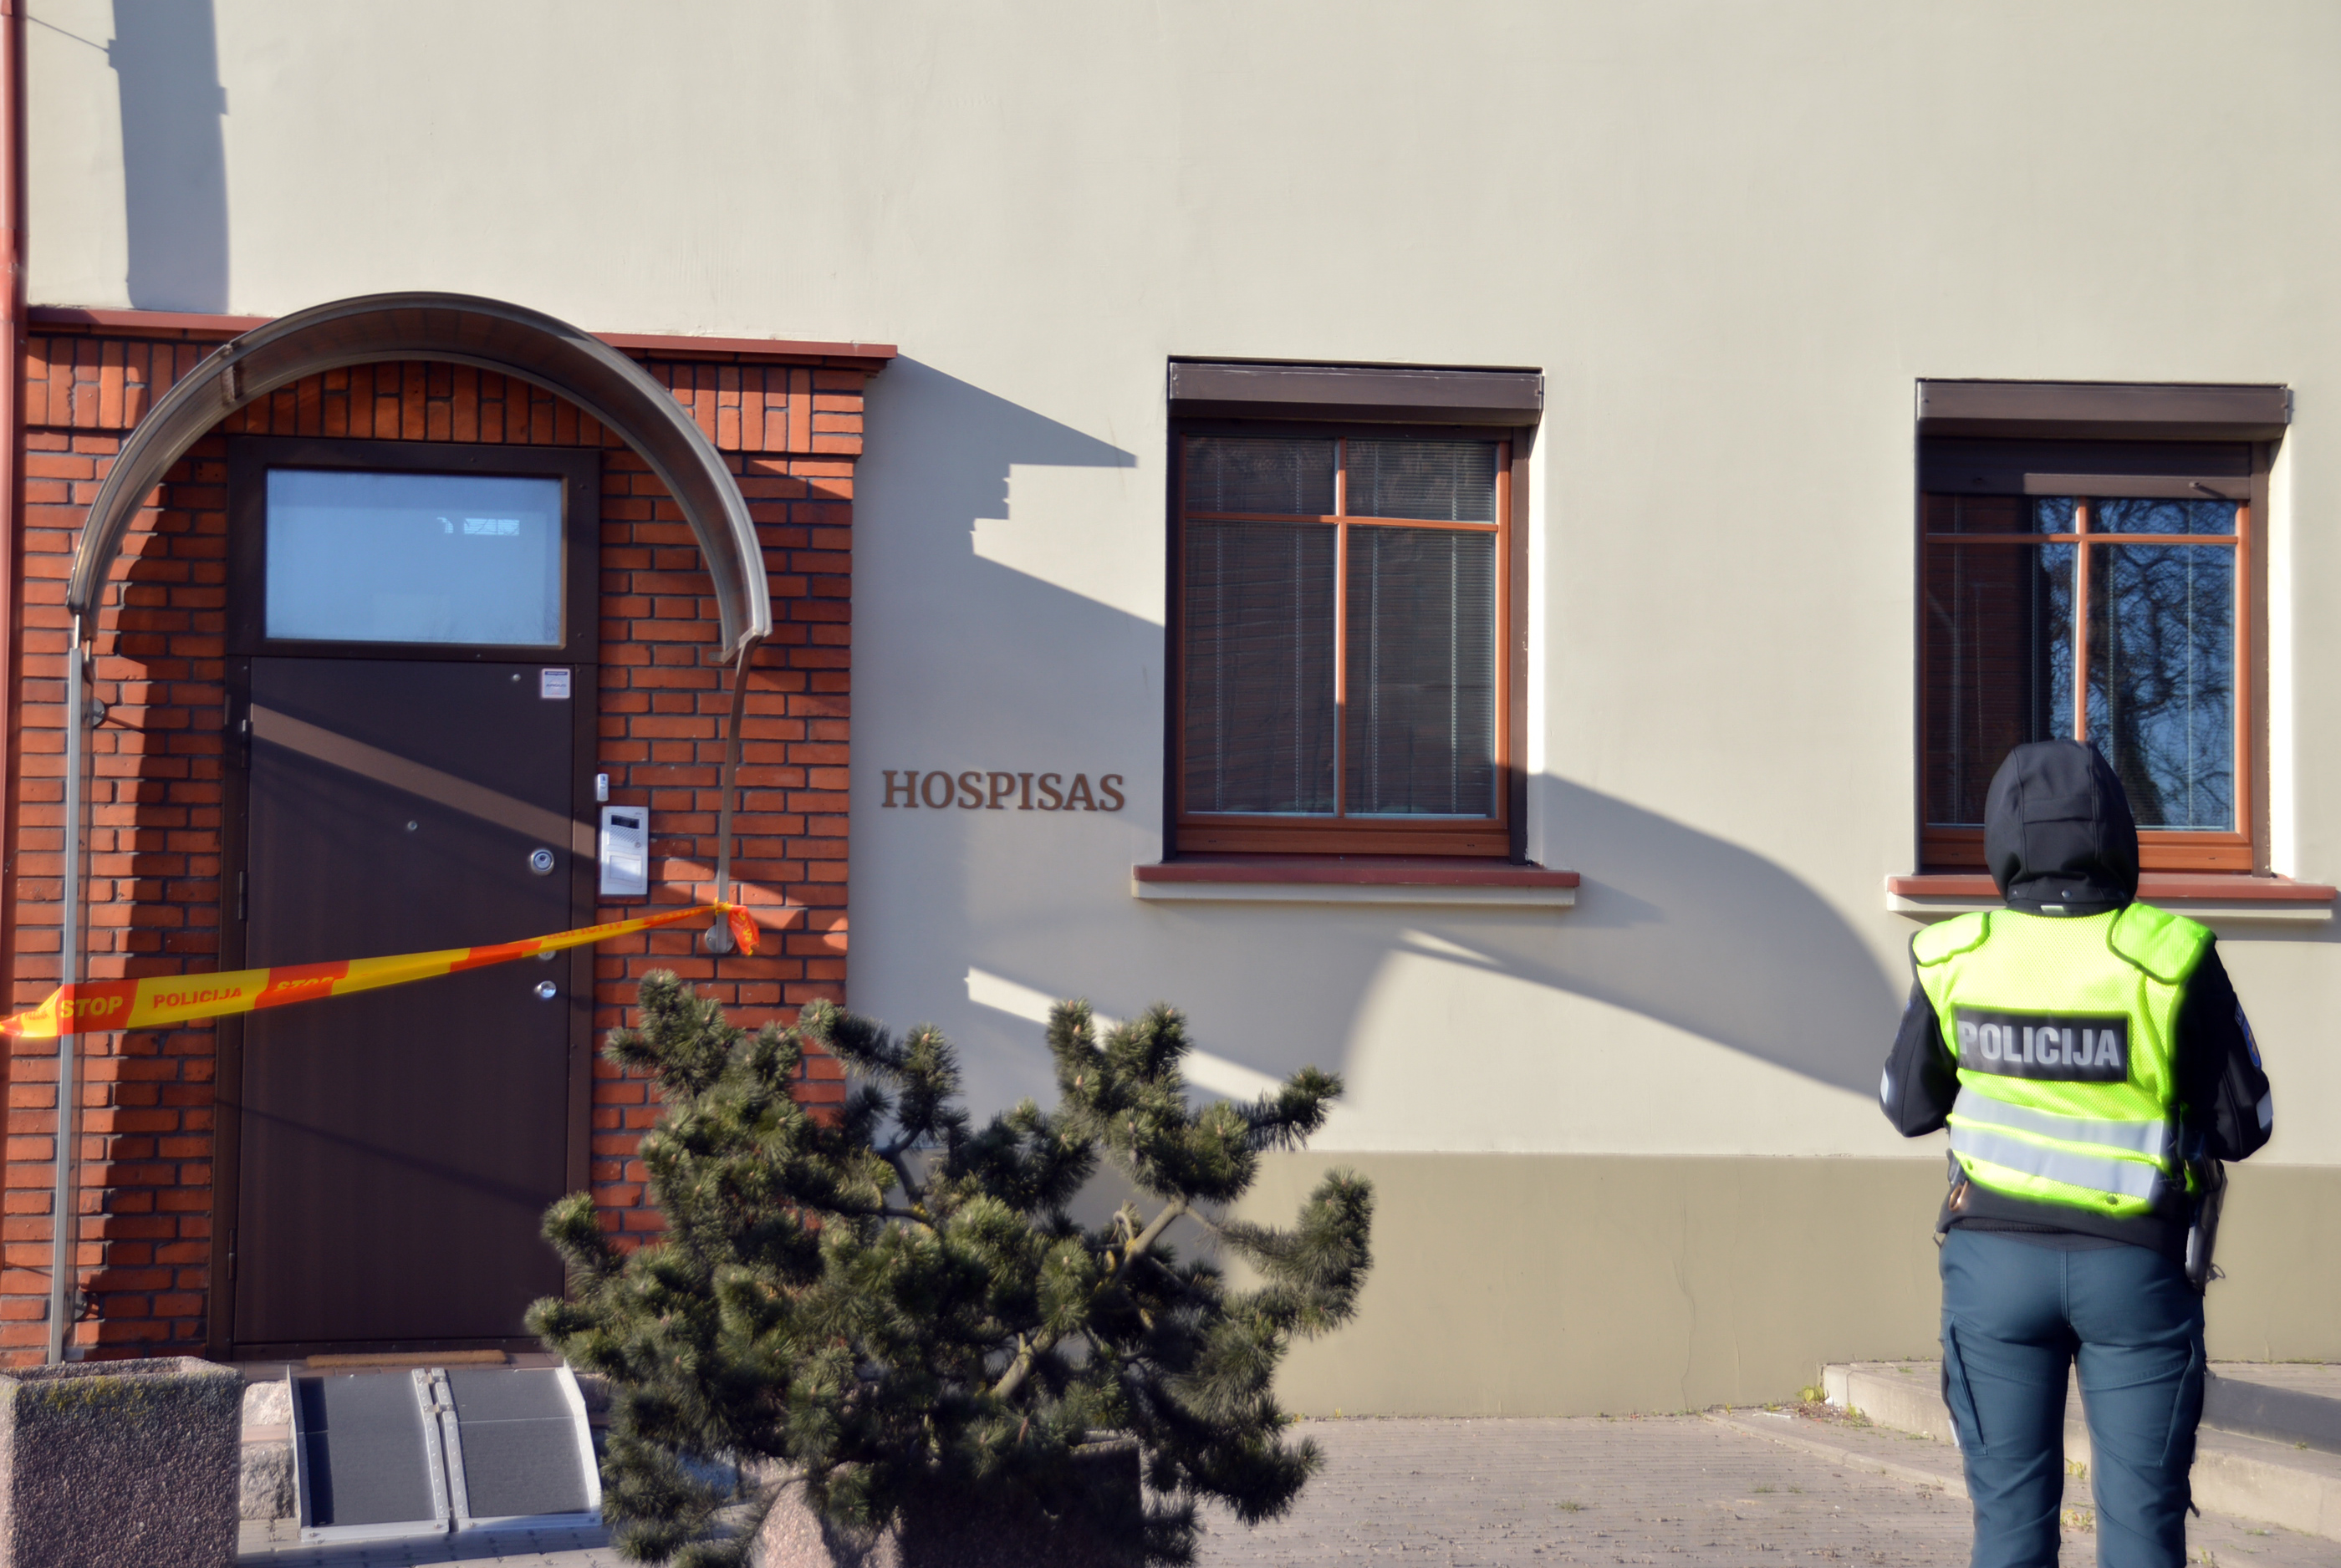 Klaipėdos hospisas: gali būti užsikrėtę visi, nėra kuo pakeisti personalo